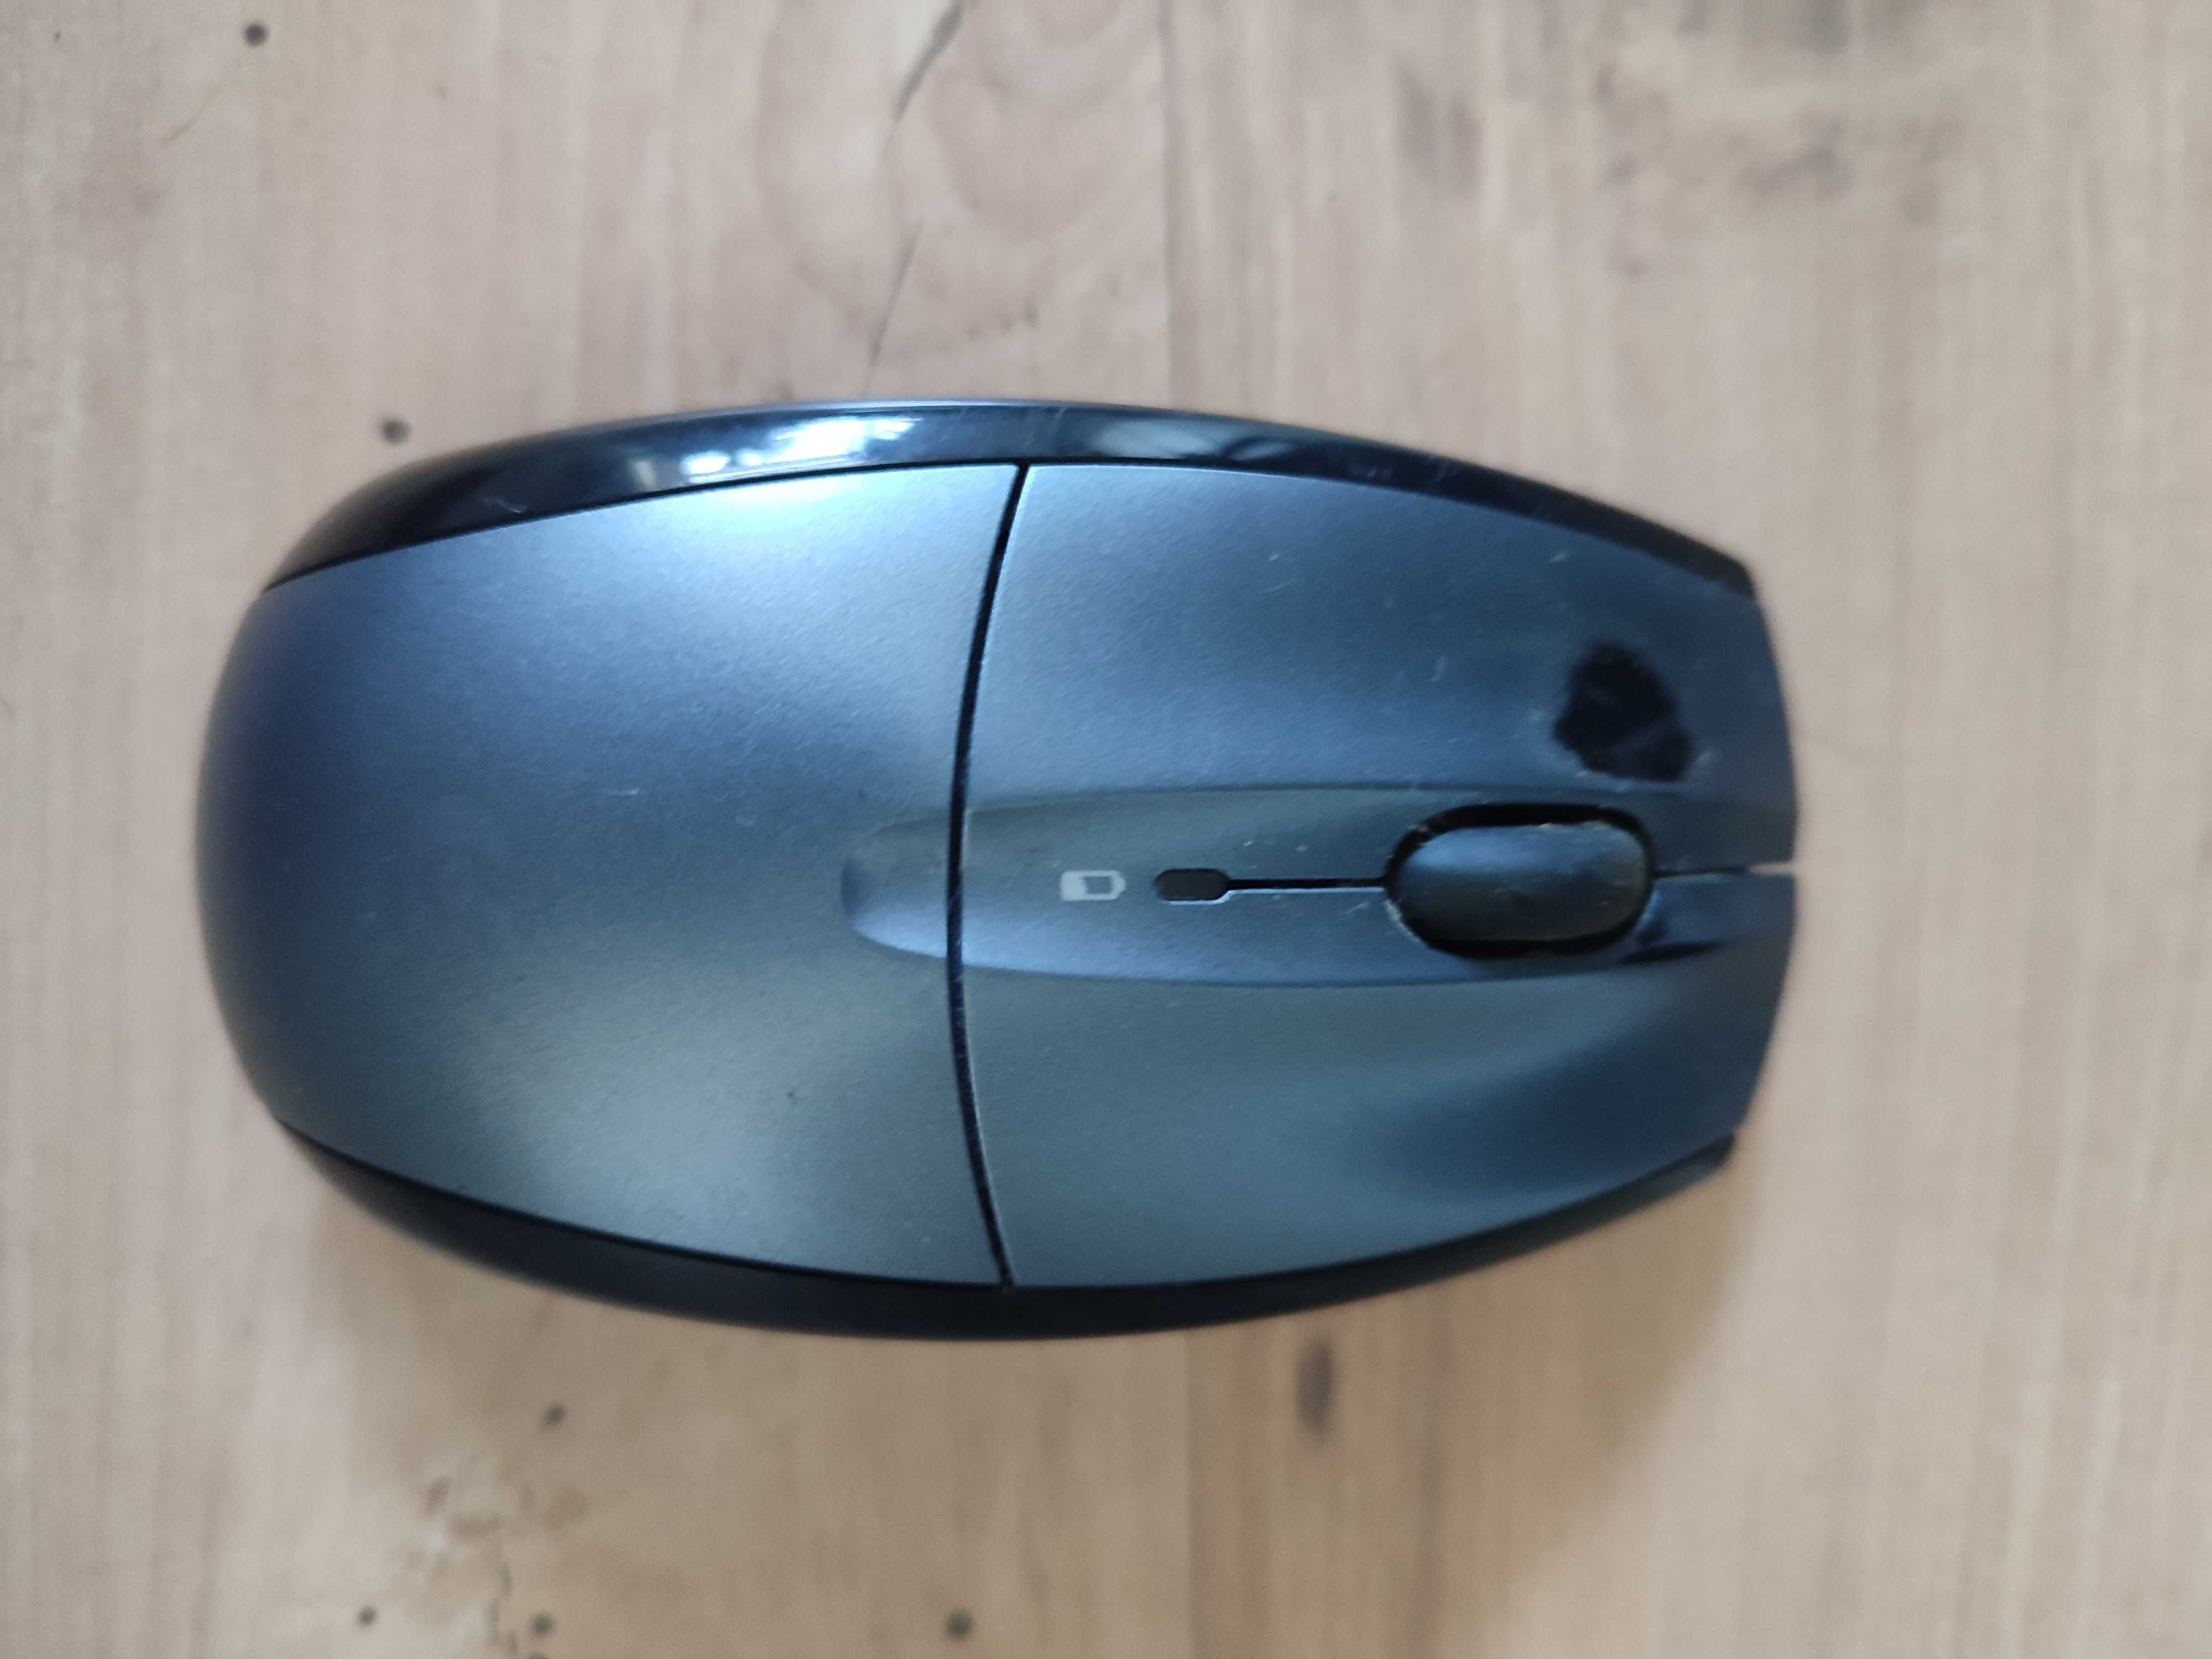 Logitech S520 mysz i klawiatura bezprzewodowa